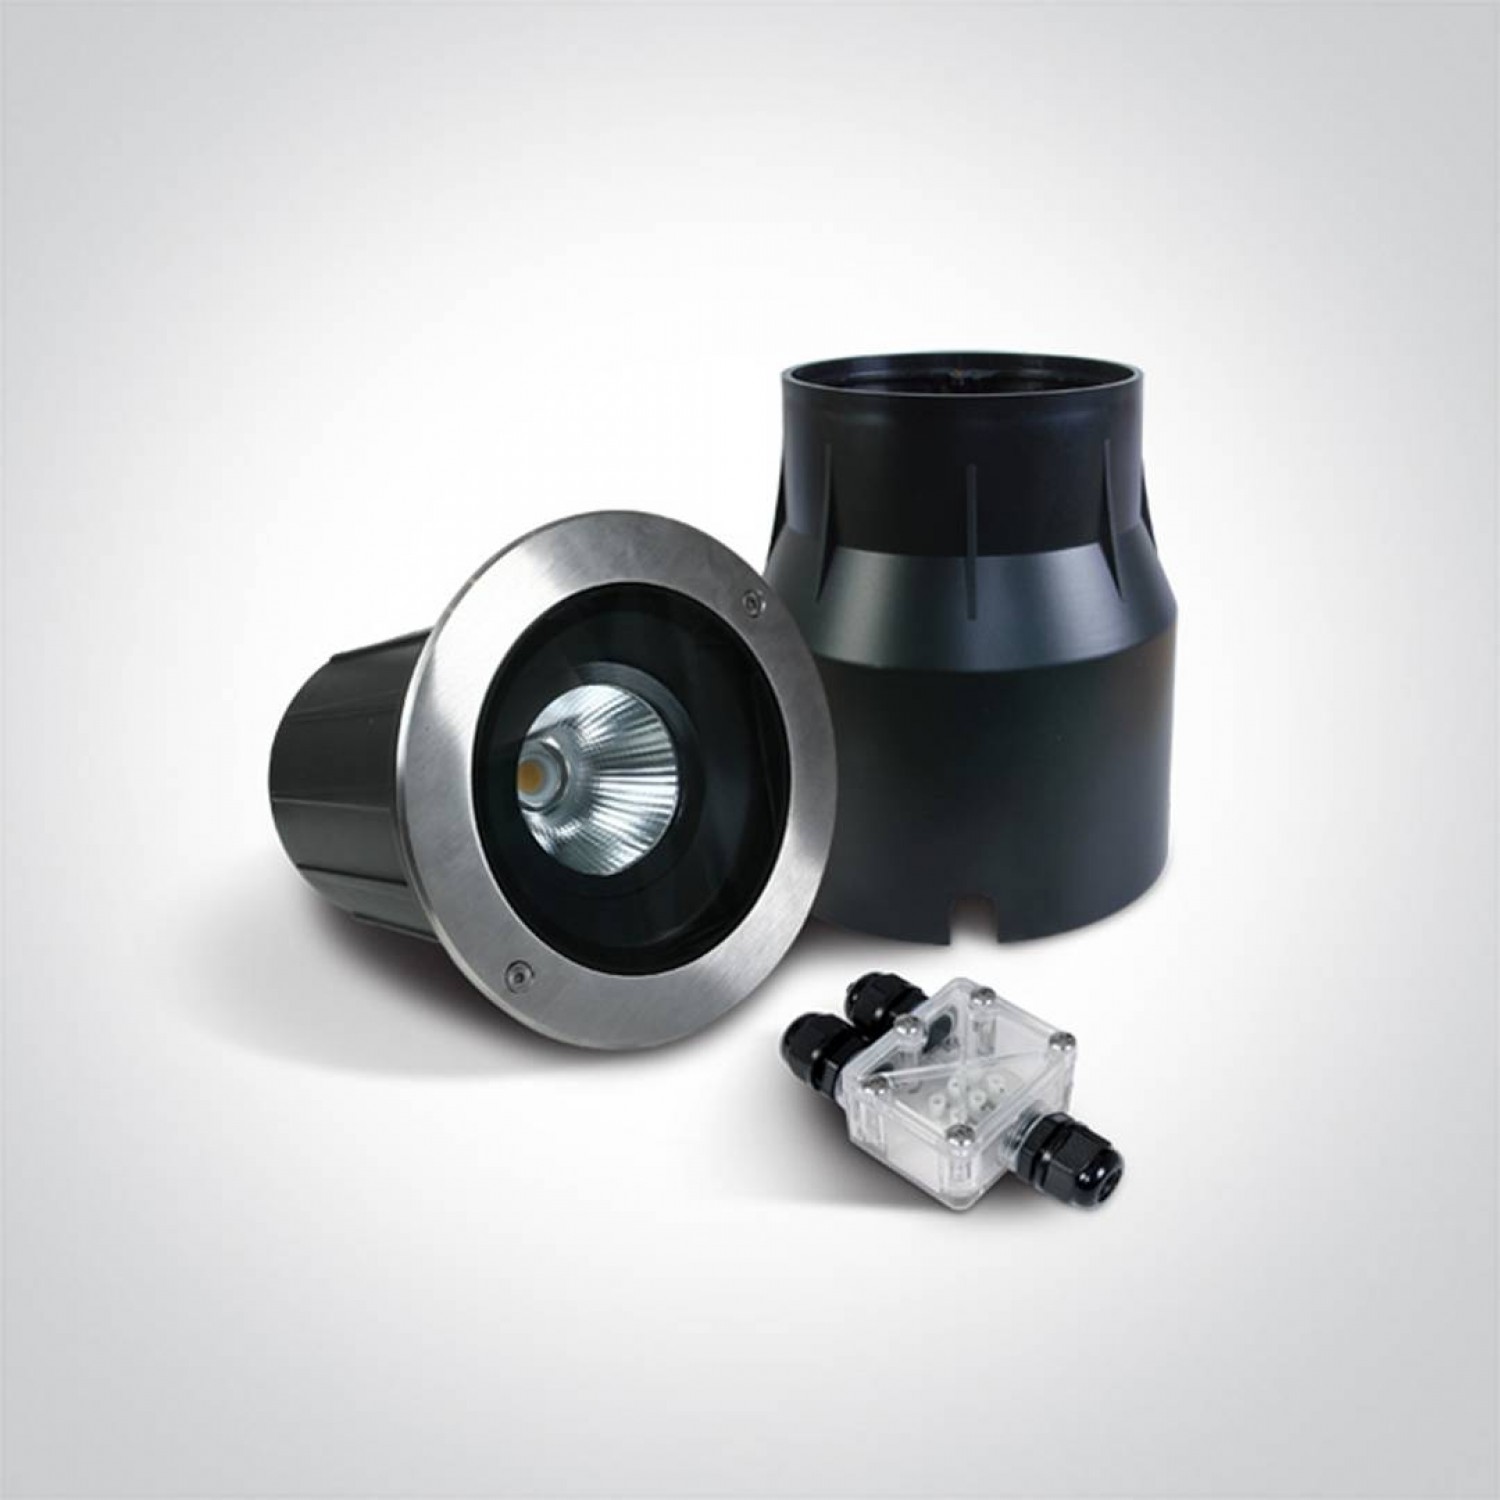 Грунтовой светильник ONE Light The COB Inground Adjustable Range 69054/W